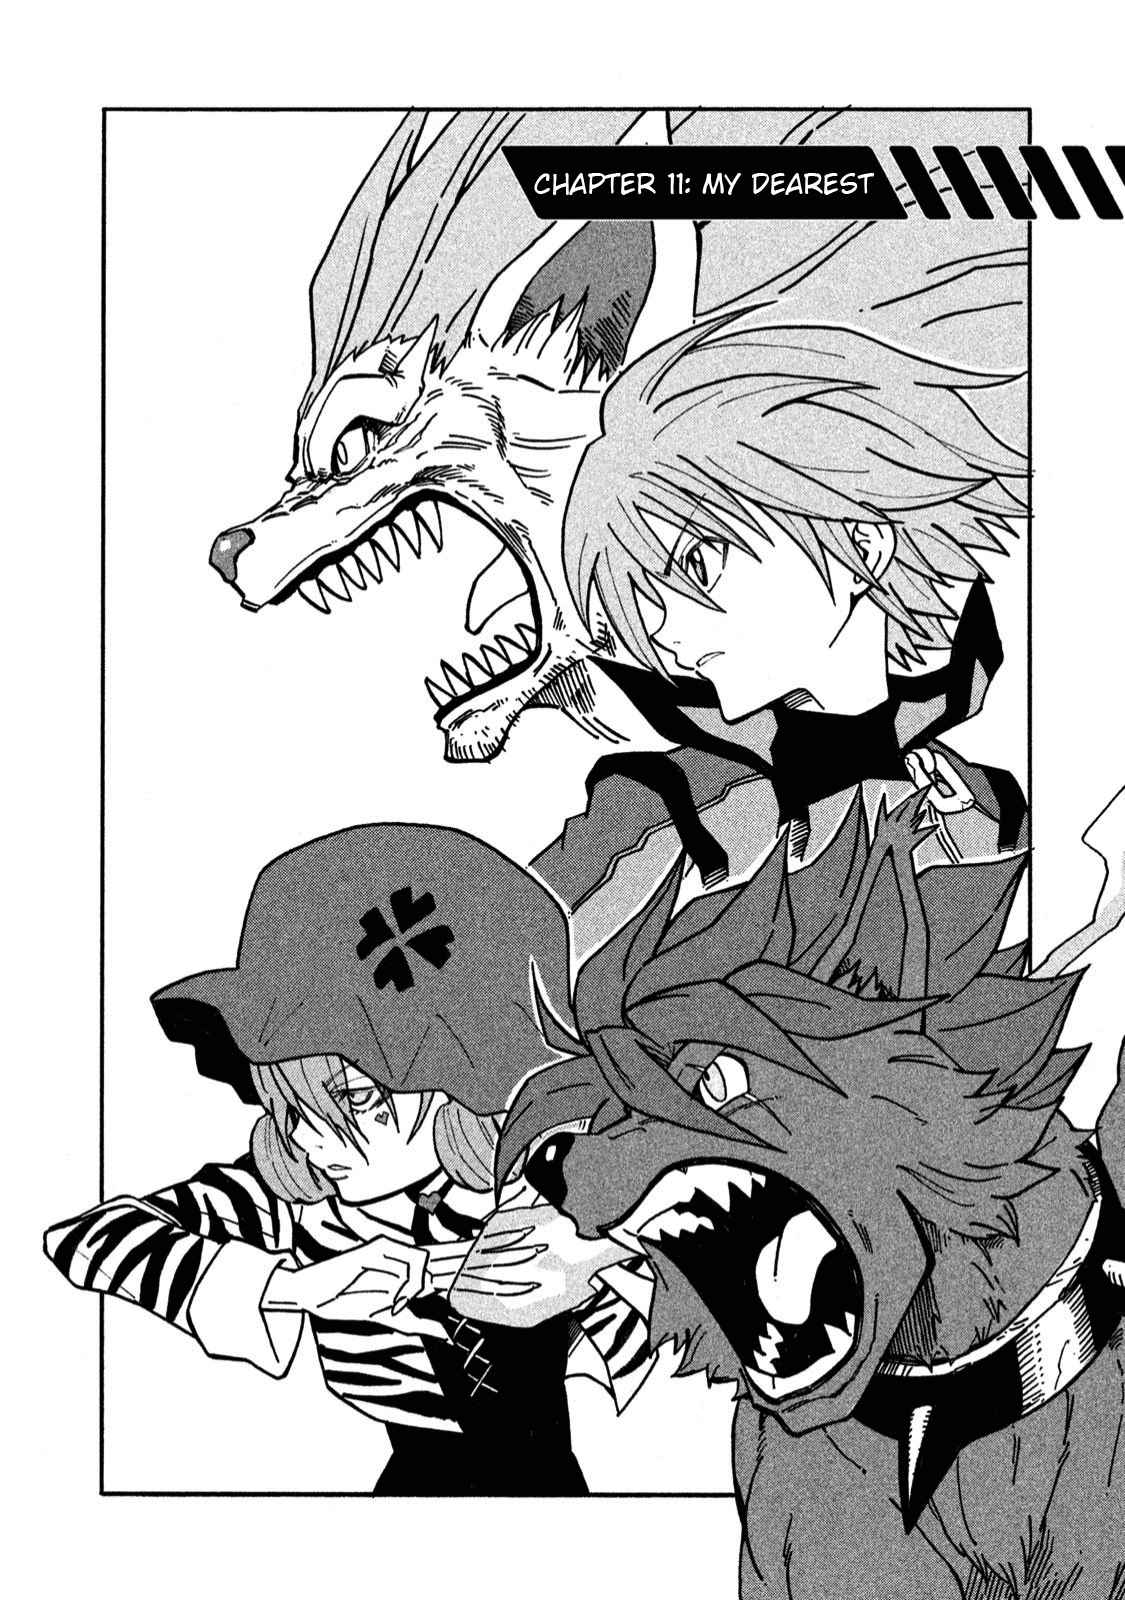 Shin Megami Tensei Devil Children Vol. 2 Ch. 11 My Dearest